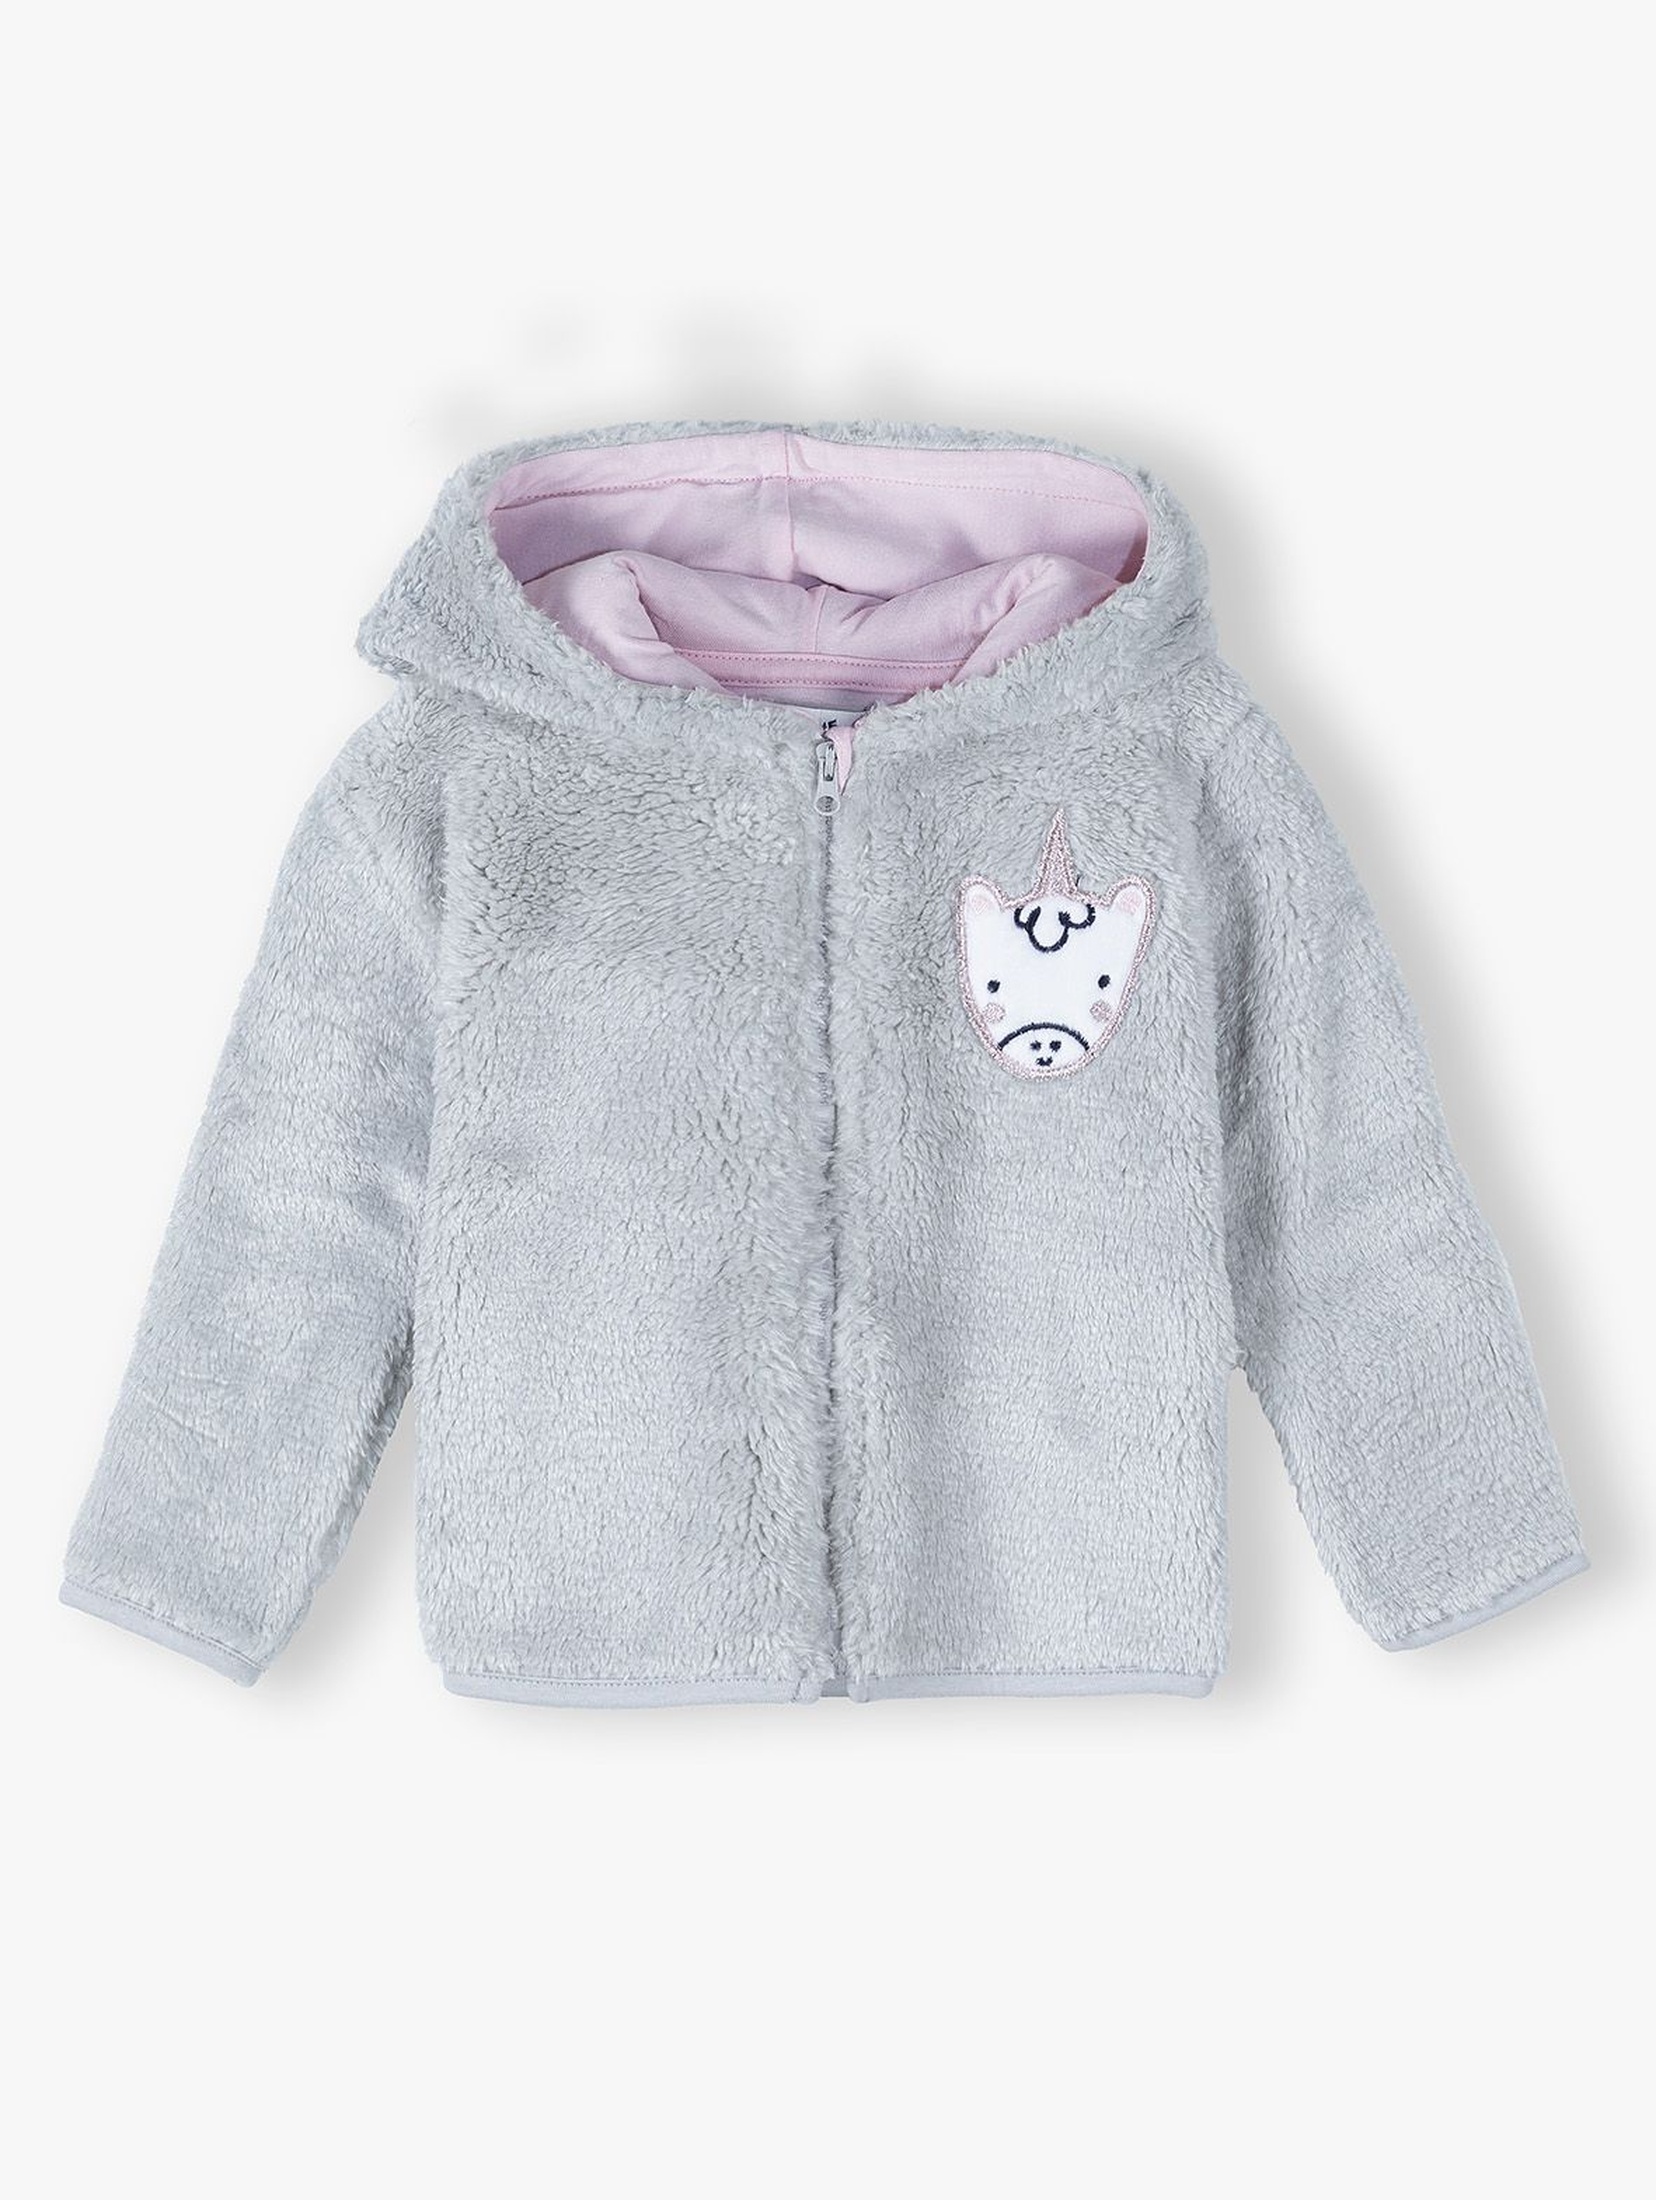 Bluza polar niemowlęca z jednorożcem - szara